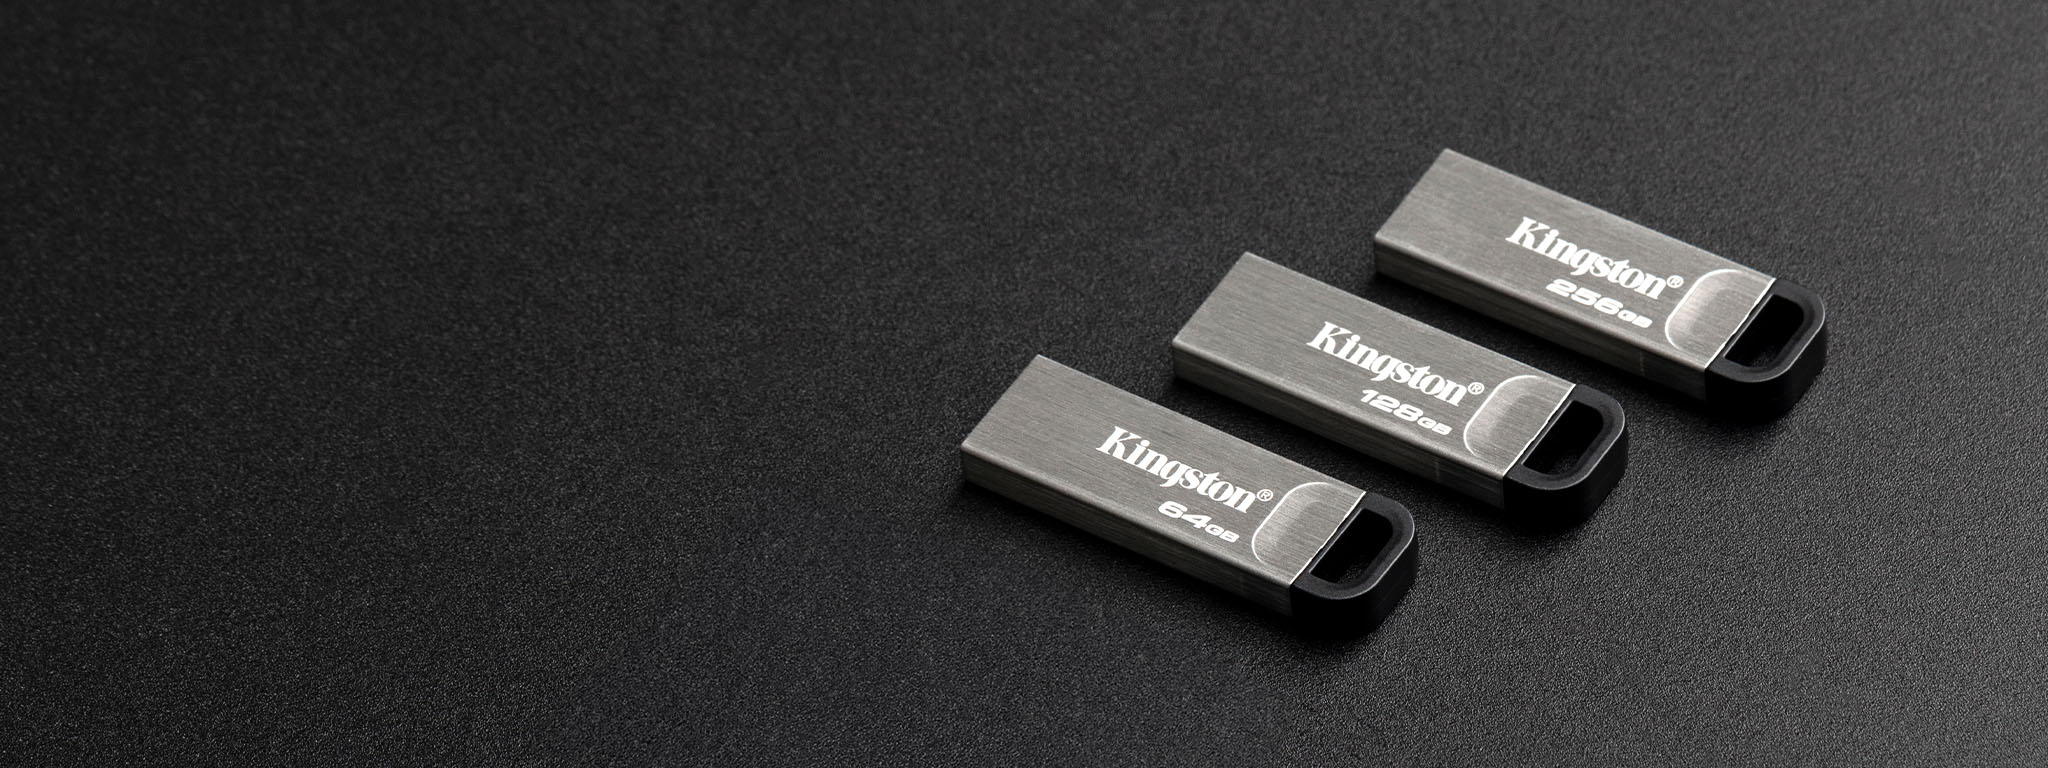 검은색 표면 위에 놓인 네 가지 용량의 DT Kyson USB 플래시 드라이브의 오버헤드 뷰